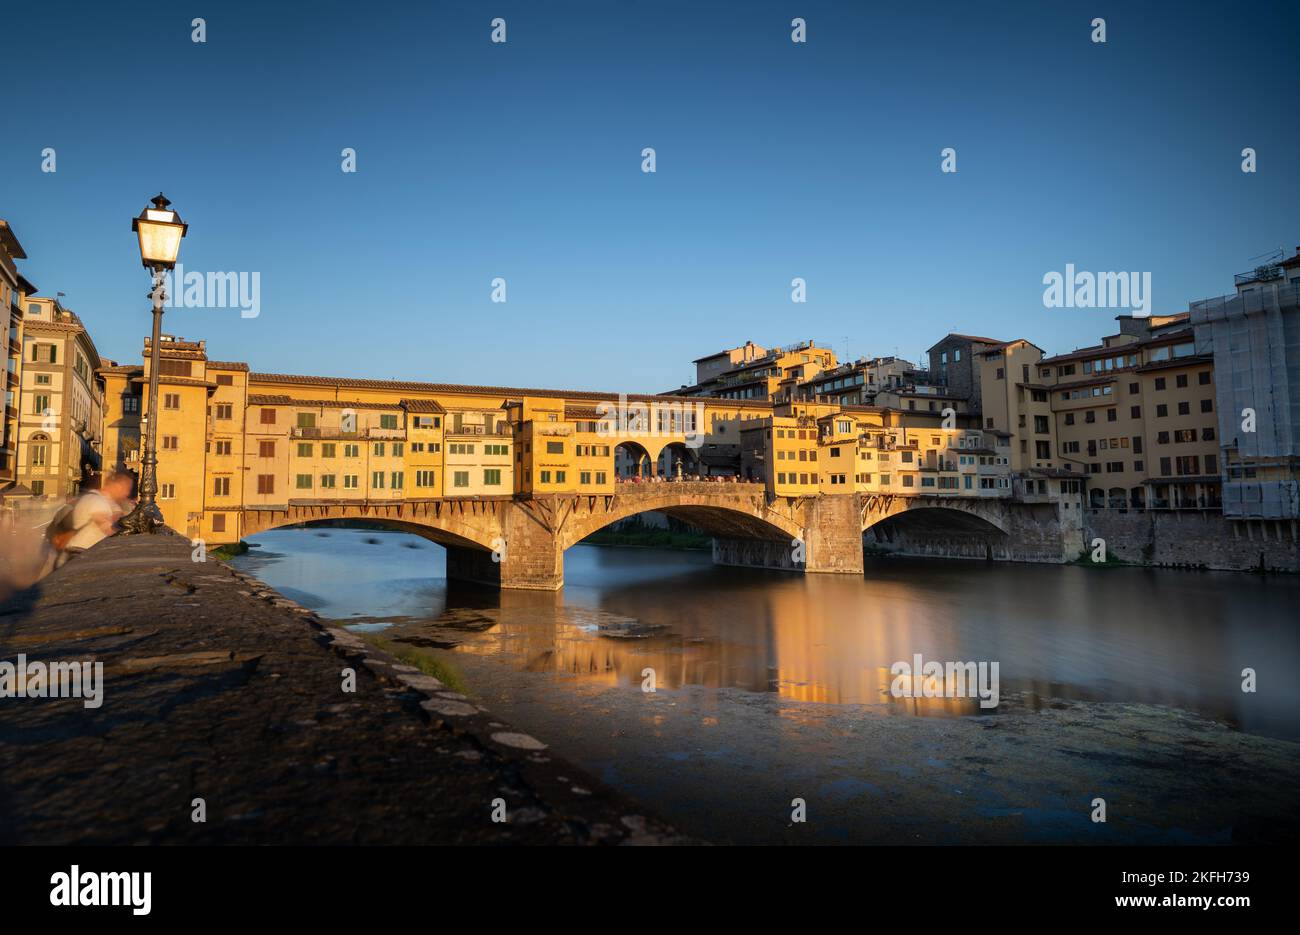 Ein schöner Blick auf die Ponte Vecchio, eine geschlossene Bogenbrücke über den Fluss Arno in Florenz, Italien Stockfoto